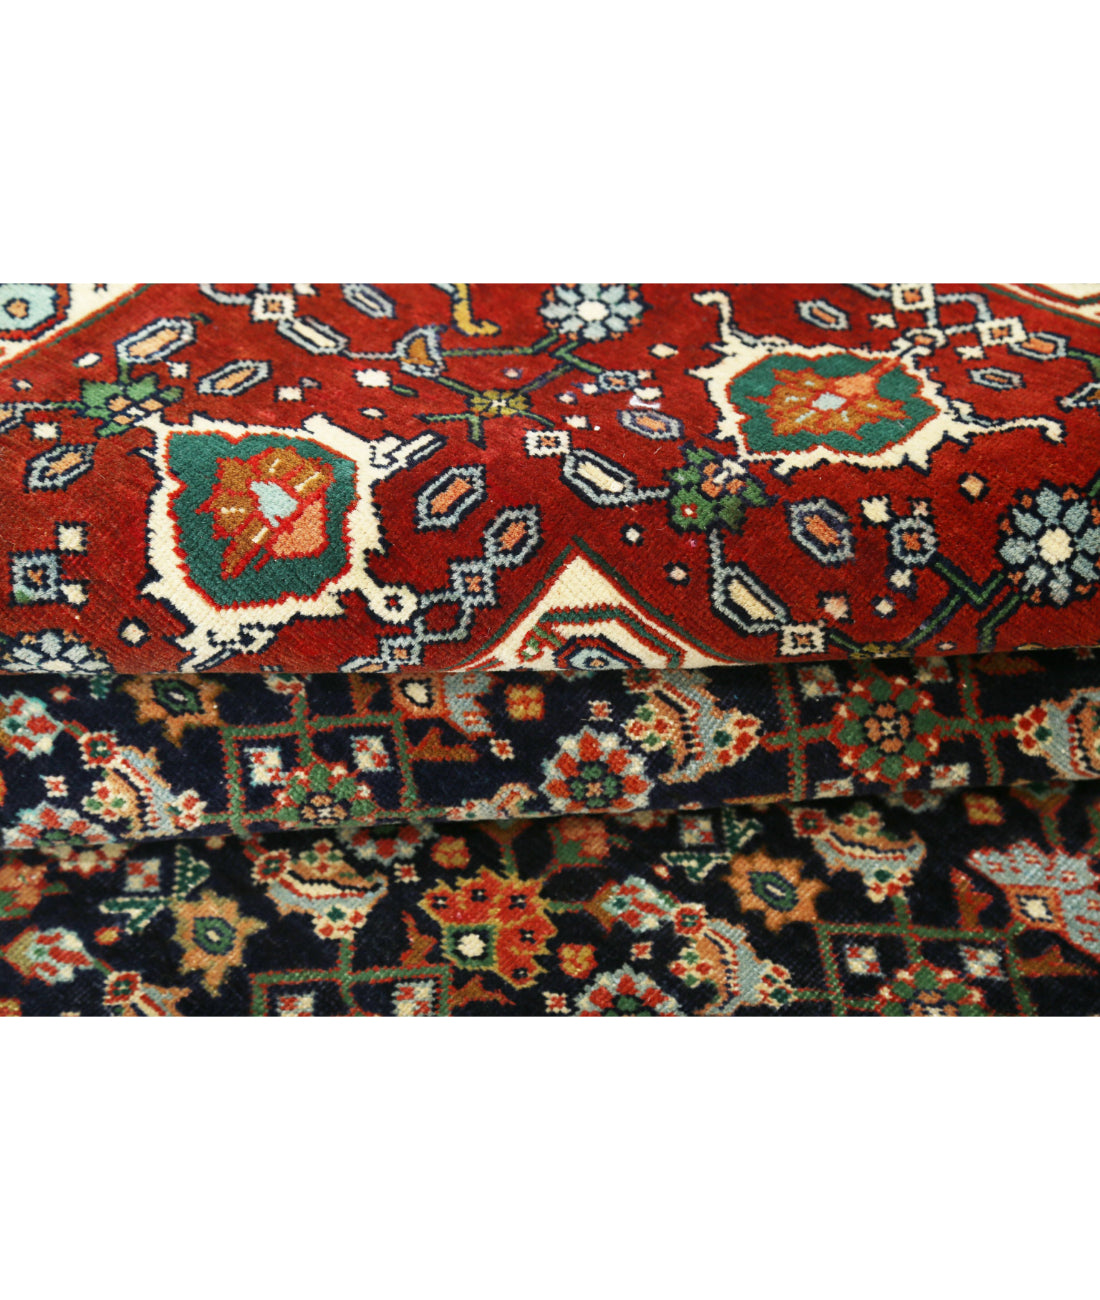 Hand Knotted Persian Bijar Wool Rug - 9'11'' x 13'4'' 9'11'' x 13'4'' (298 X 400) / Blue / Red